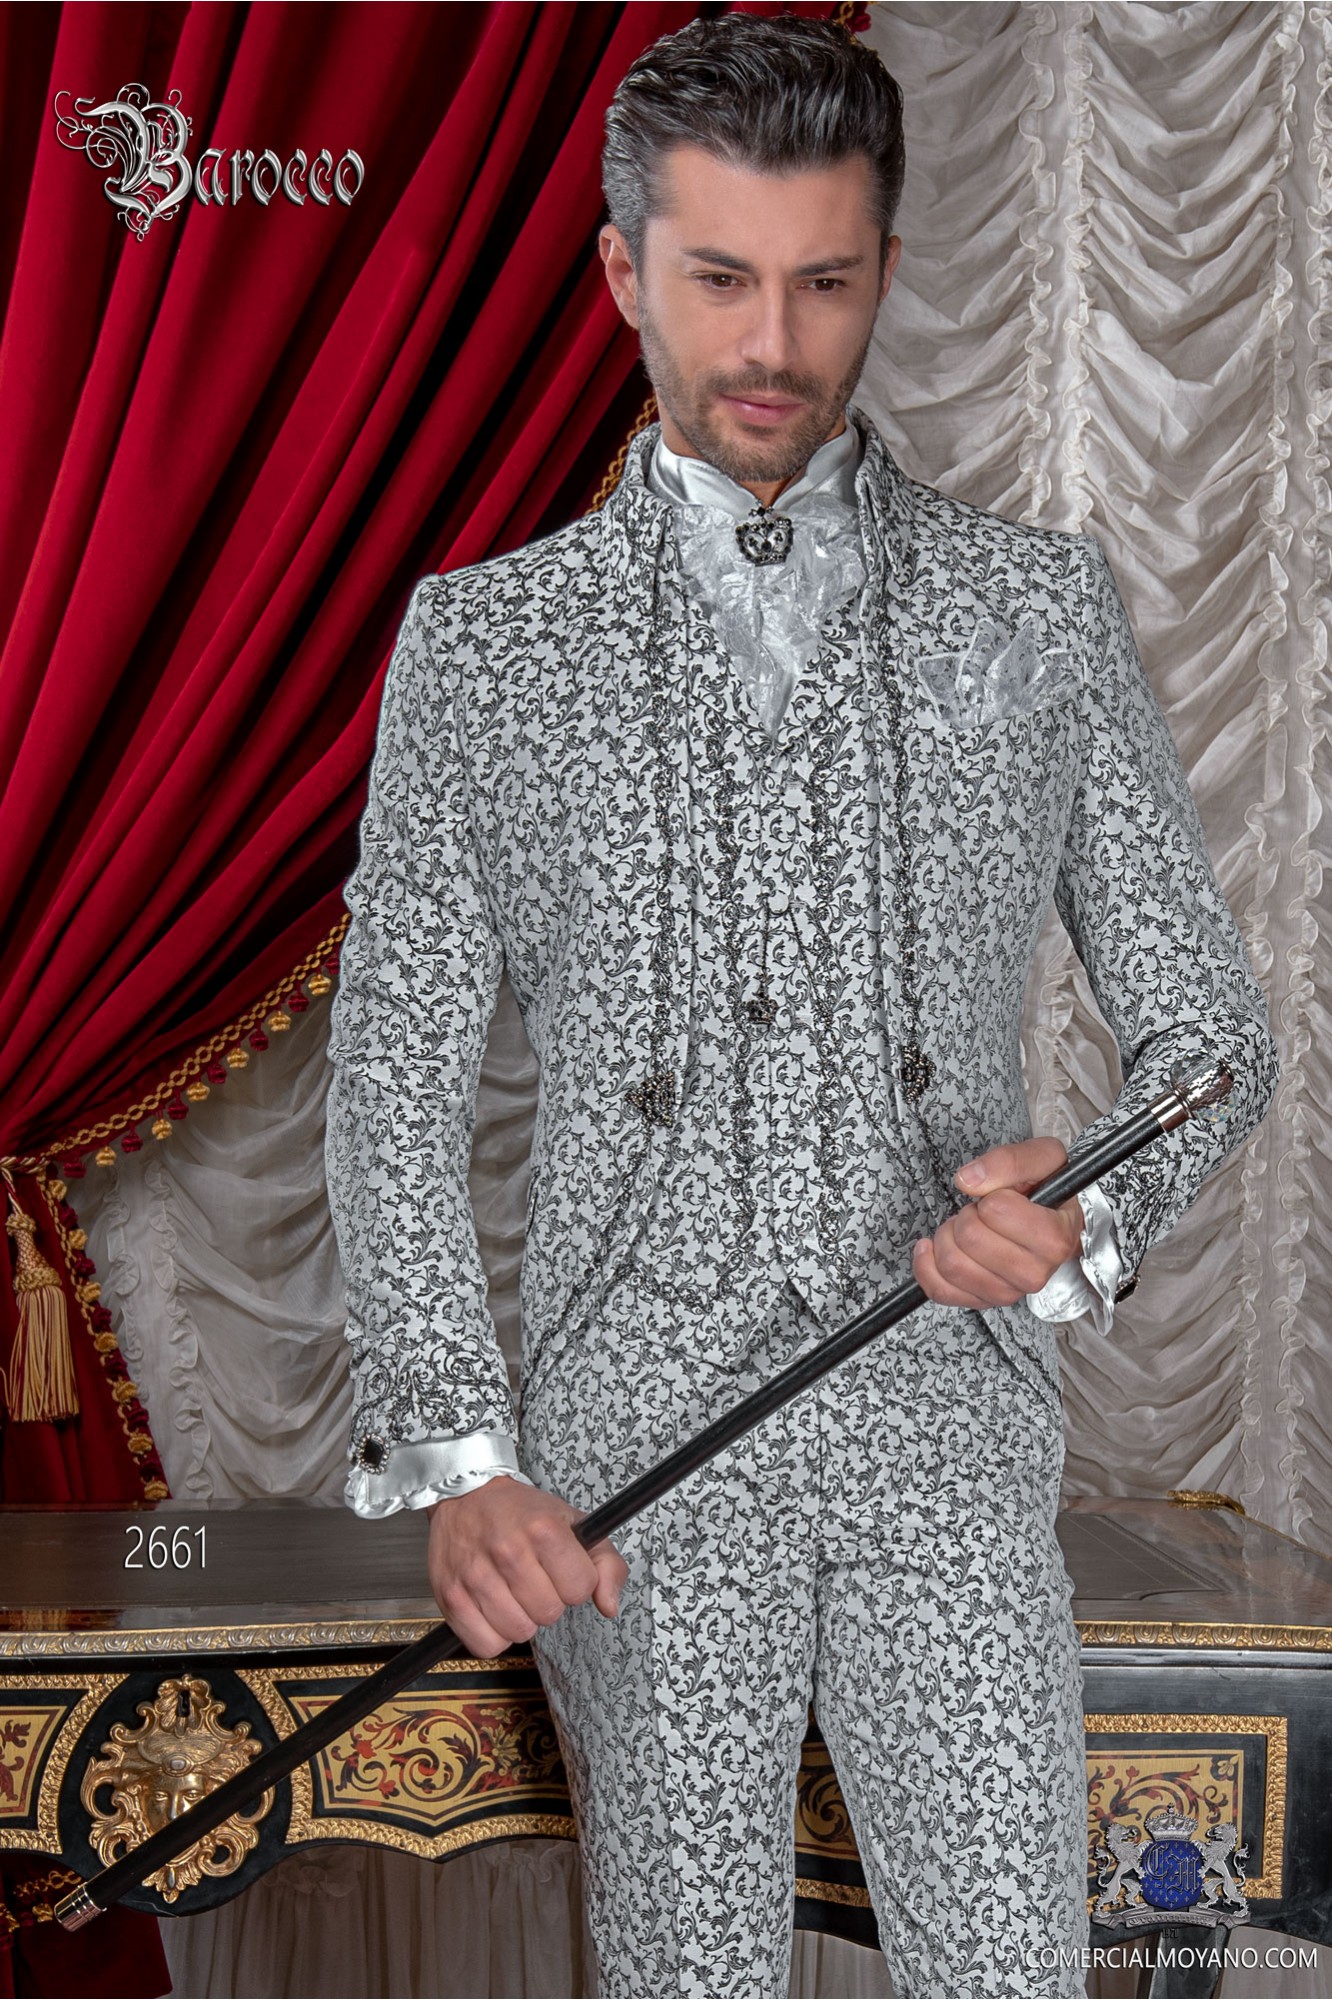 Traje de novio barroco, levita de época cuello Napoleón en tejido jacquard blanco y negro con bordados negro modelo: 2661 Mario Moyano colección Barroco